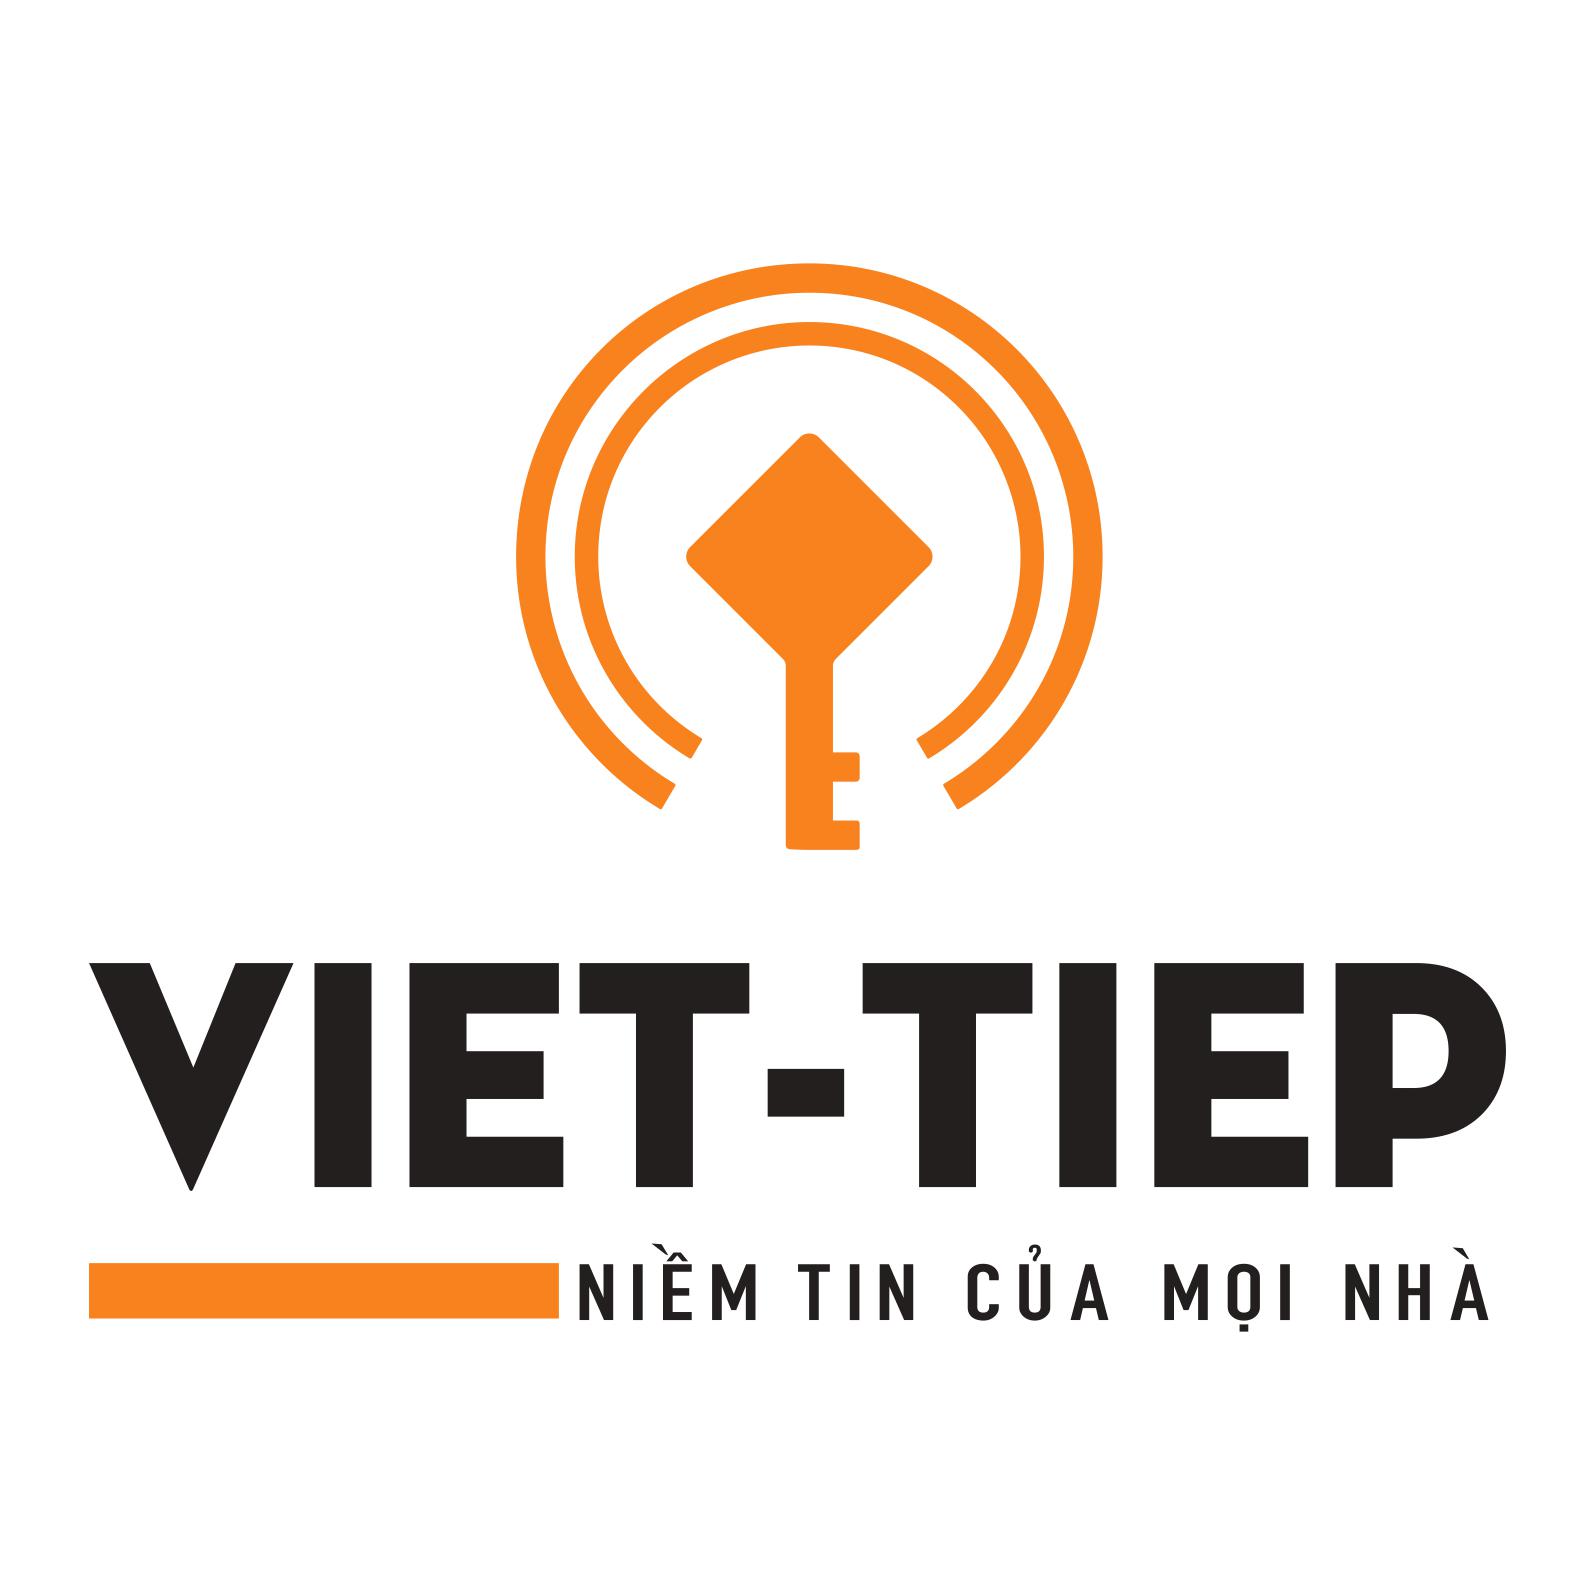 Báo cáo kết quả giao dịch cổ phiếu của người có liên quan đến người nội bộ-Nguyễn Thị Kim Oanh